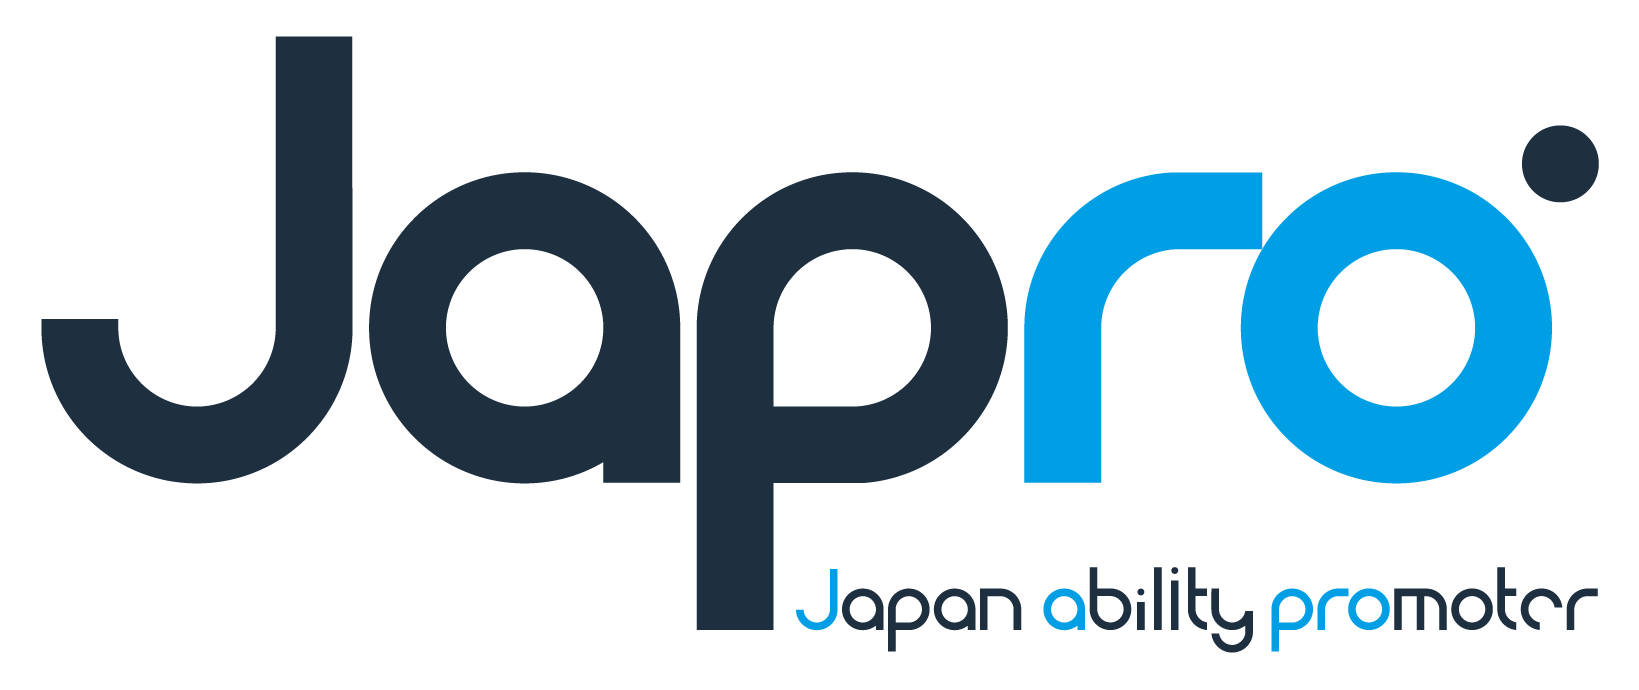 株式会社Japro 